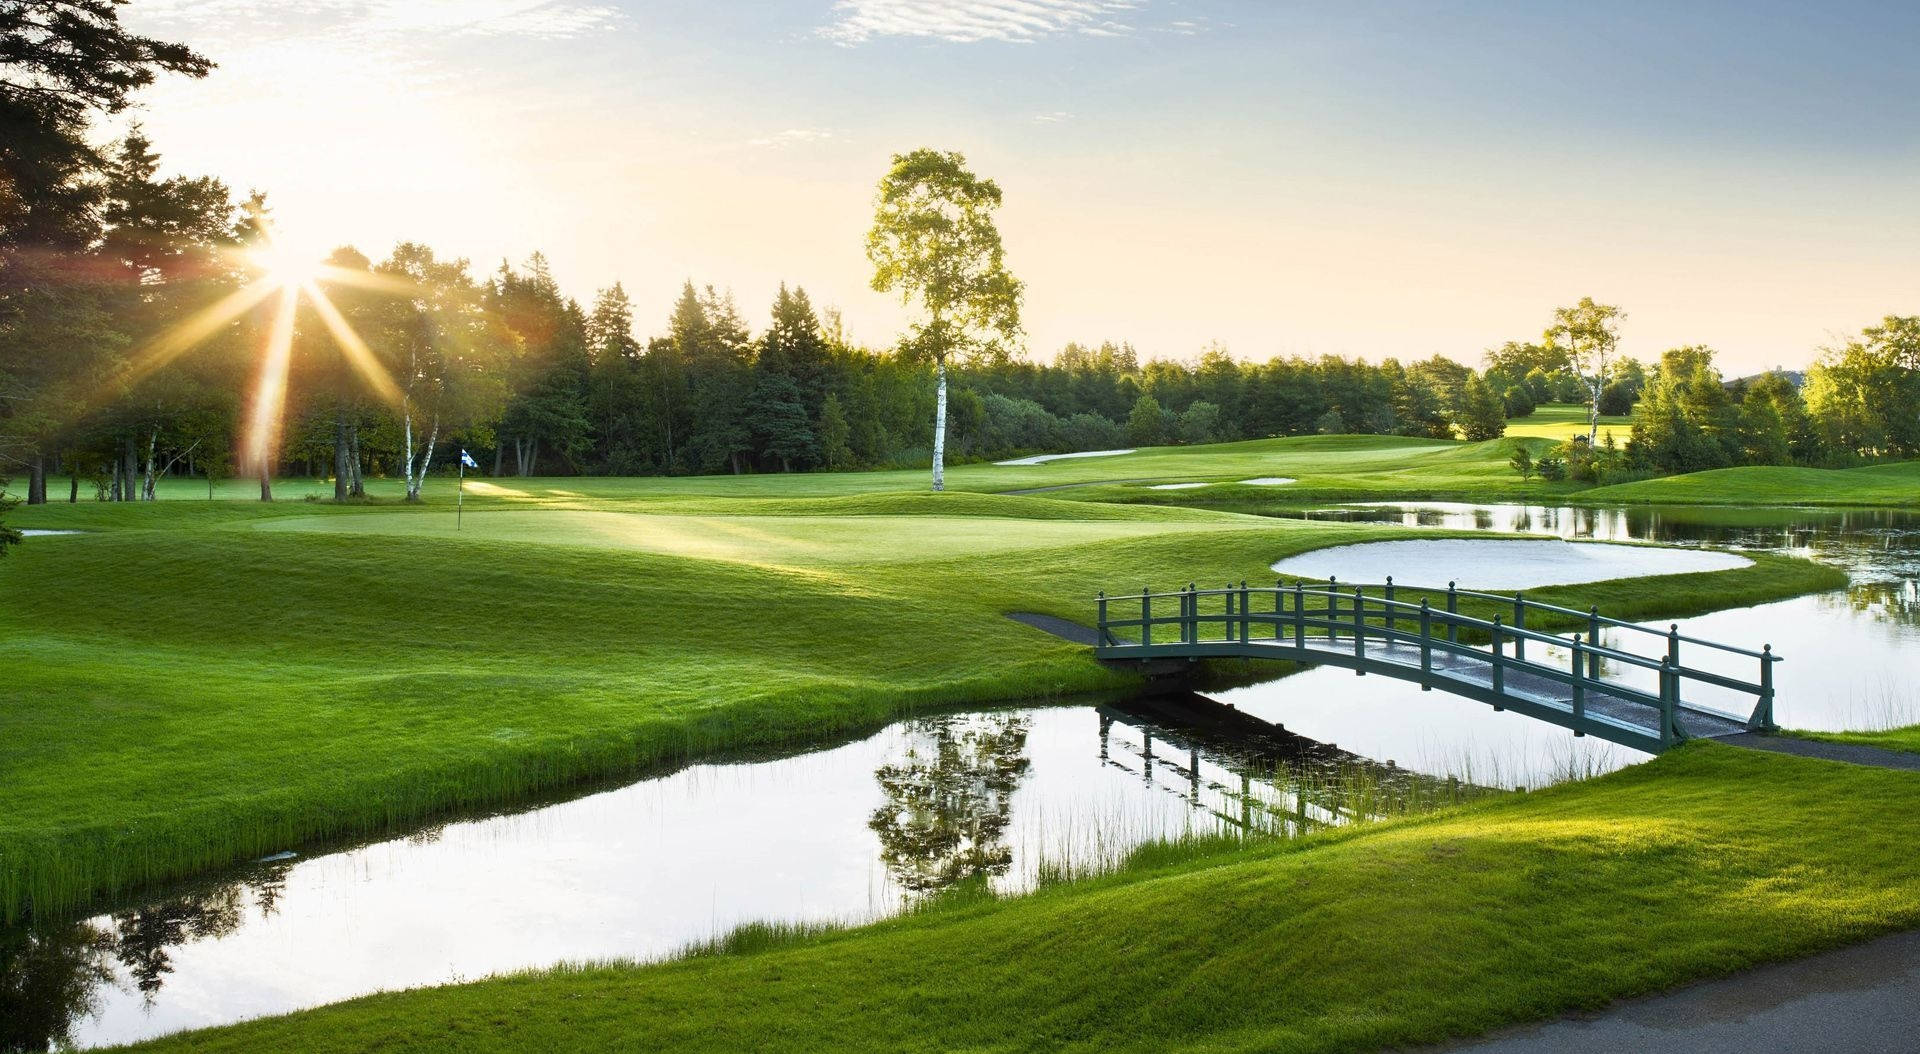 Golferverfolgen Ihren Traum Bei Einem Wunderschönen Golfspiel Im Freien. Wallpaper